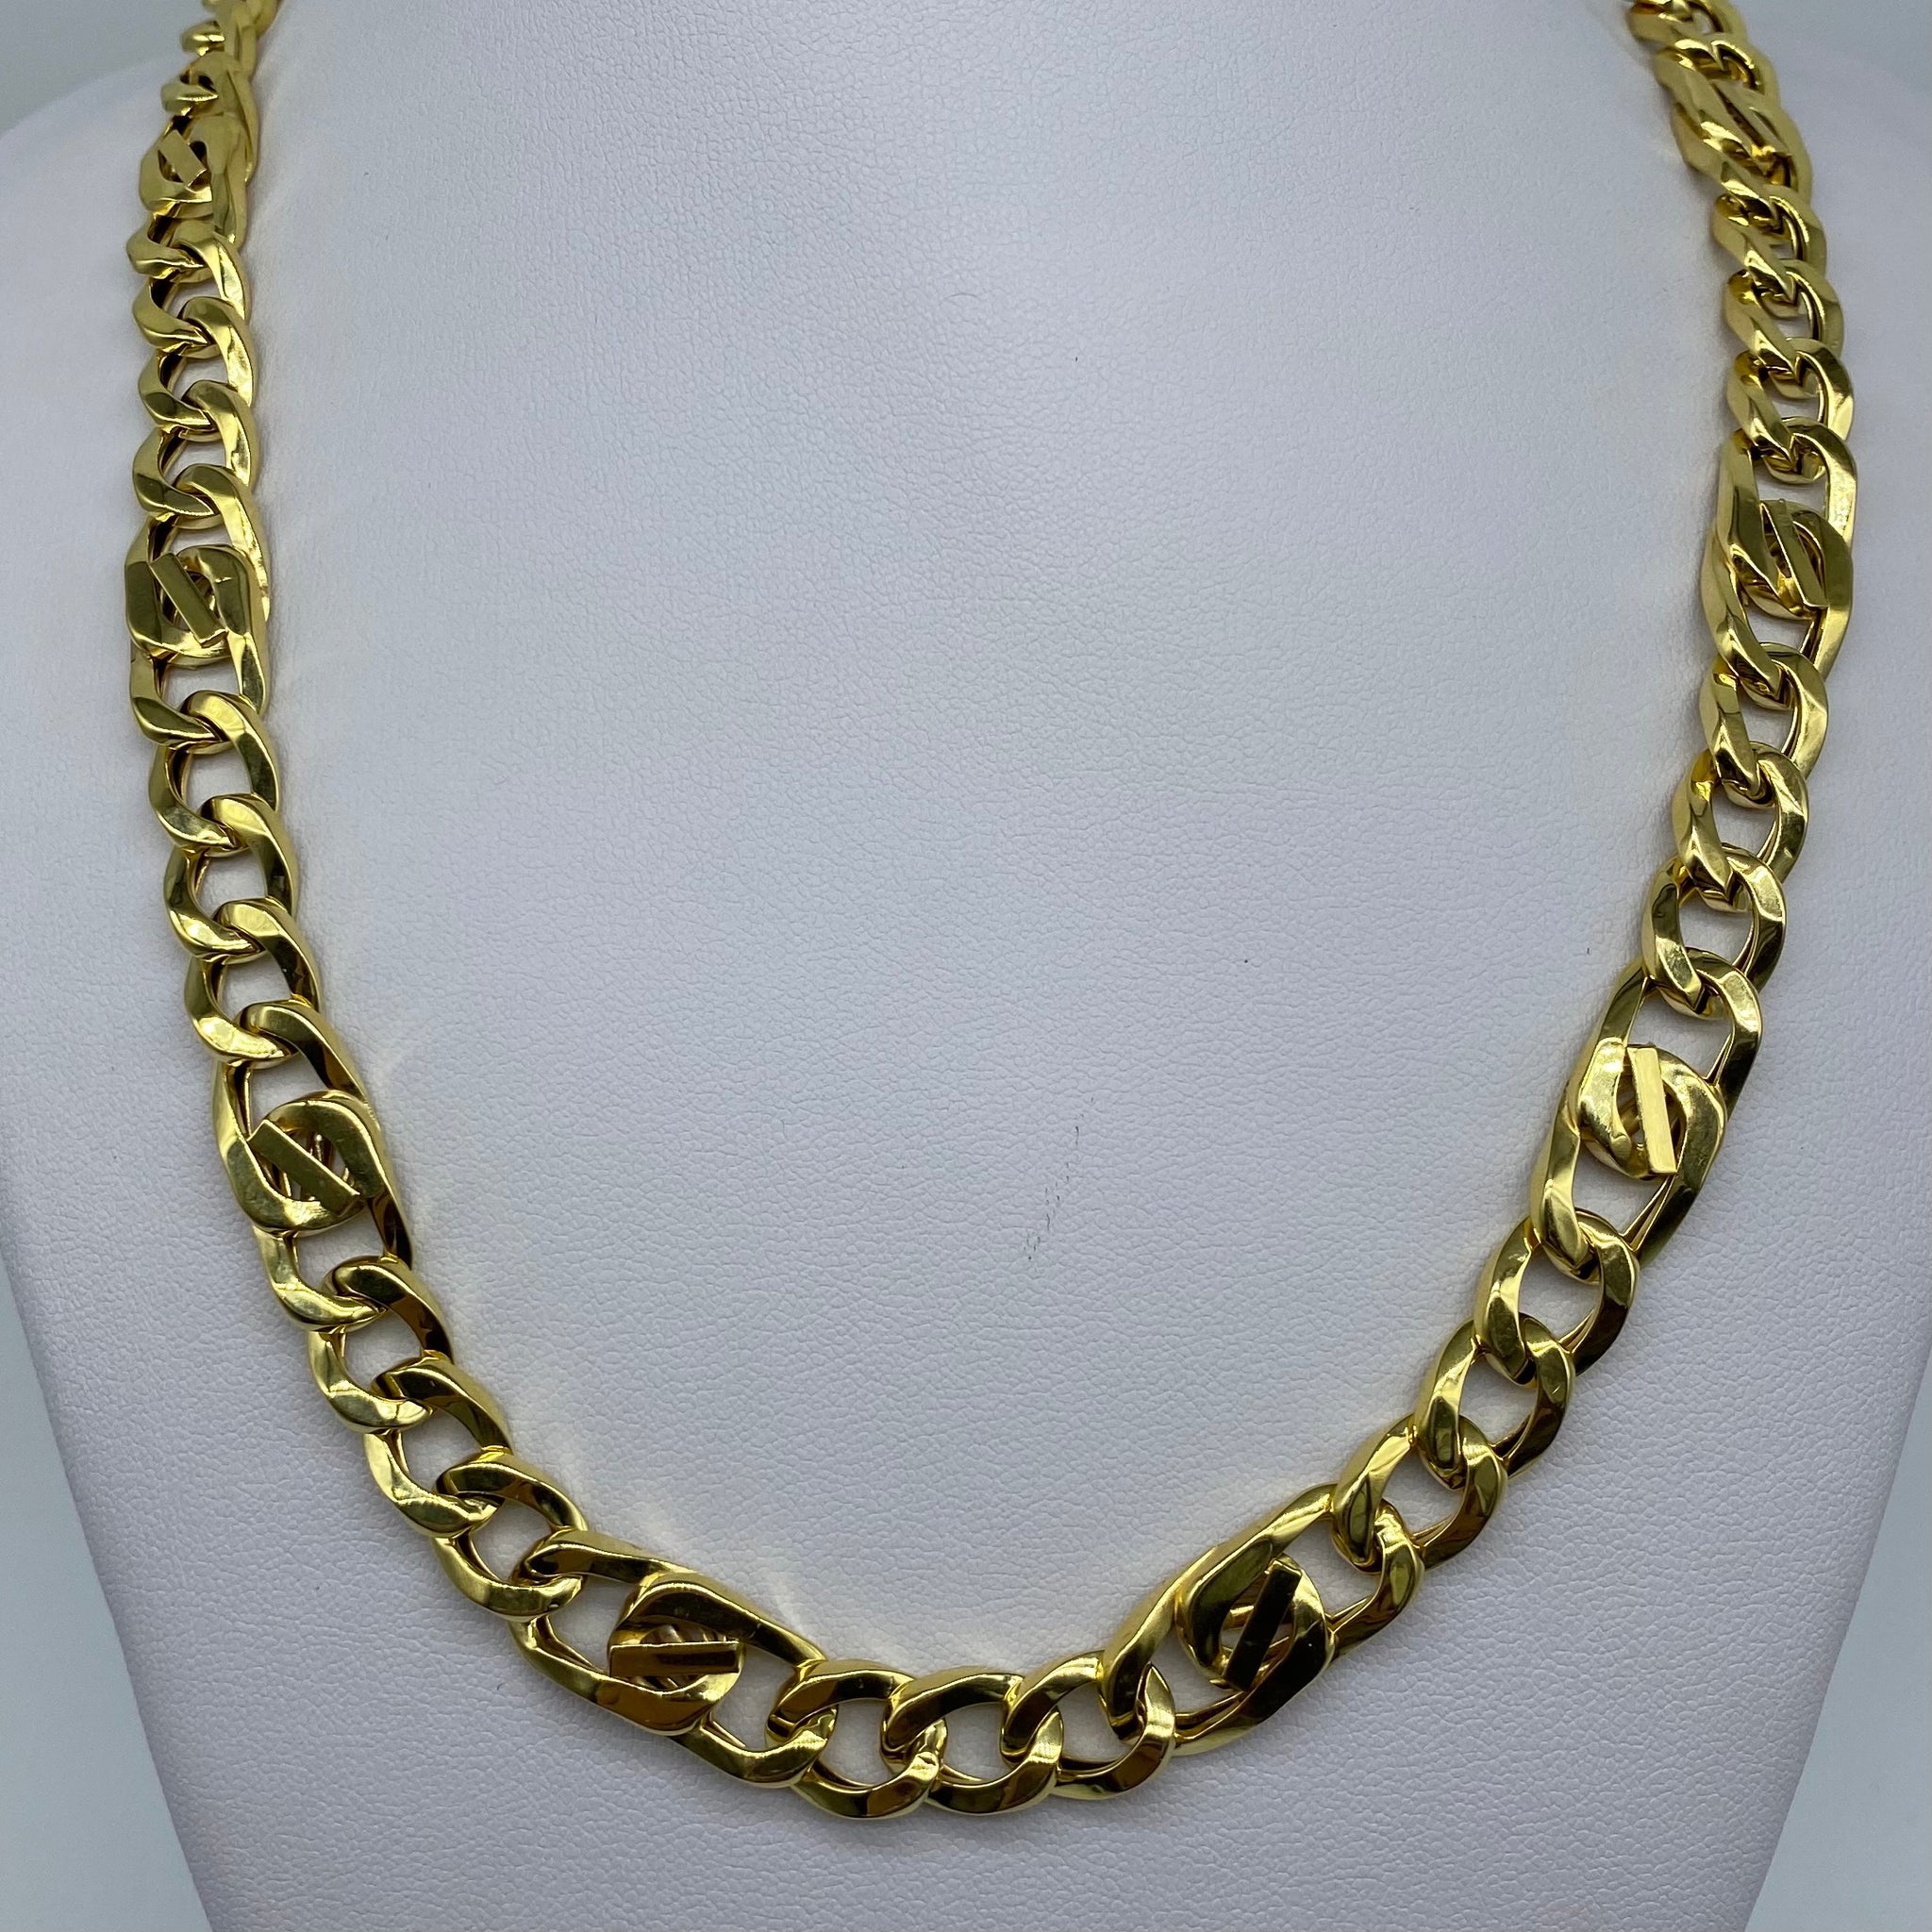 NEW 14K Gold Italian Fancy Link Chain